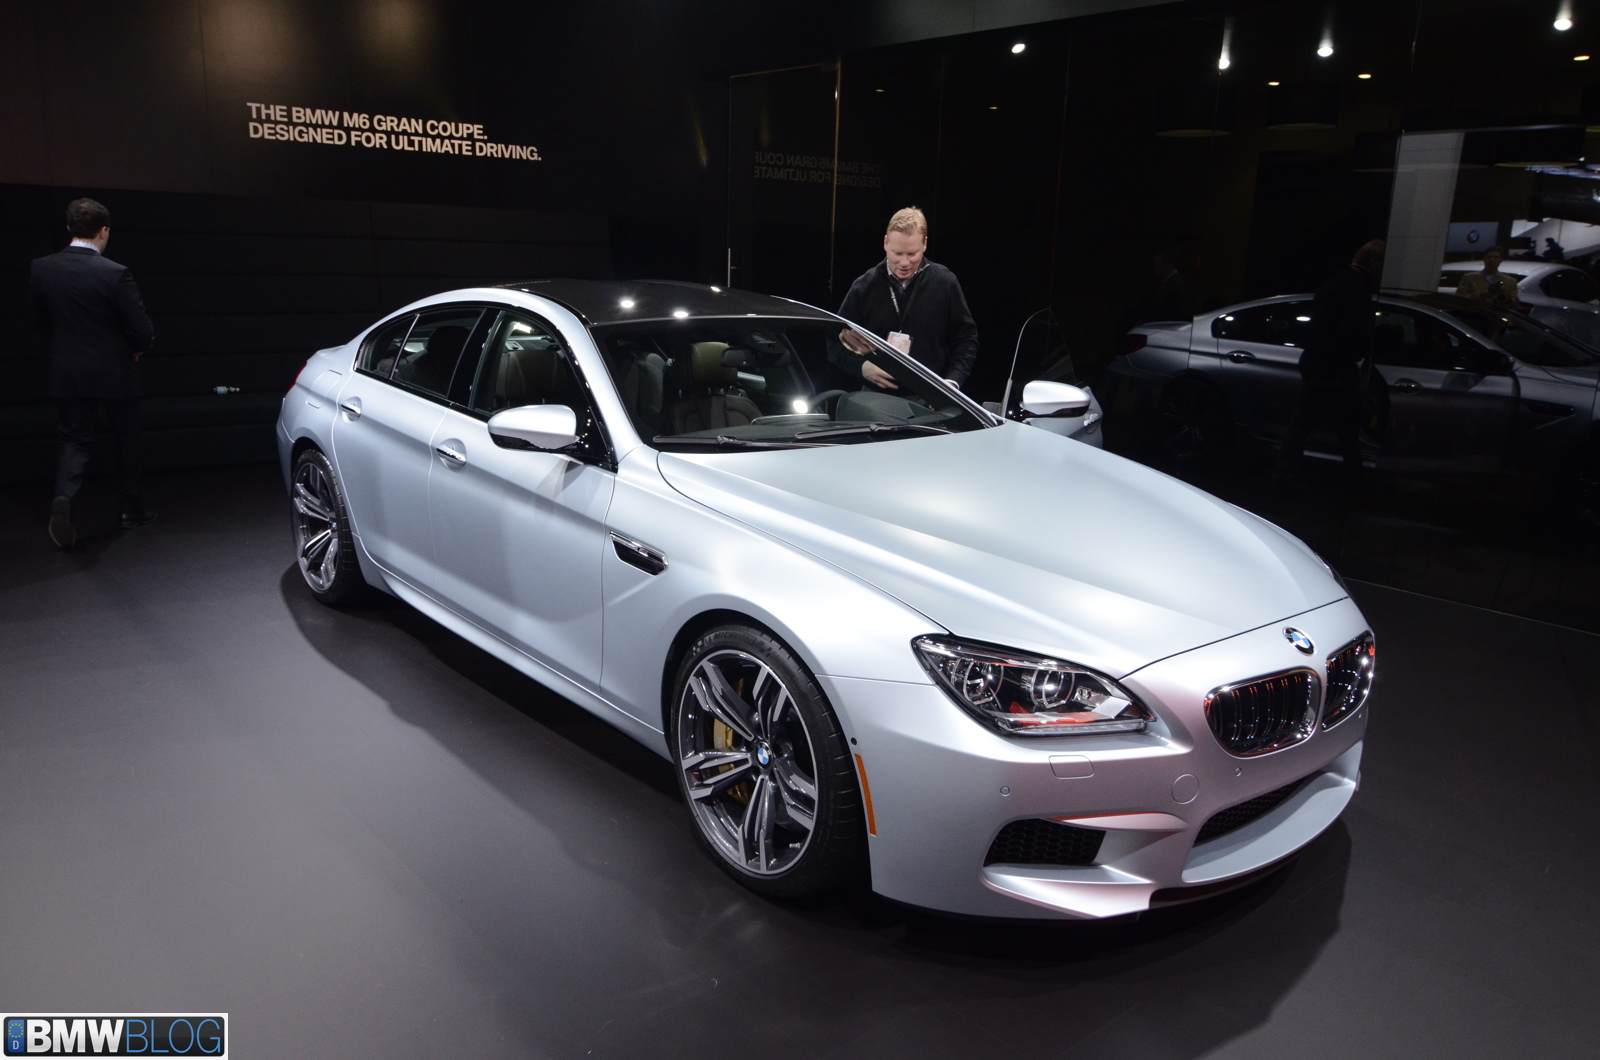 Vidéo: BMW M6 Gran Coupé au Salon de l'auto de Detroit 2013